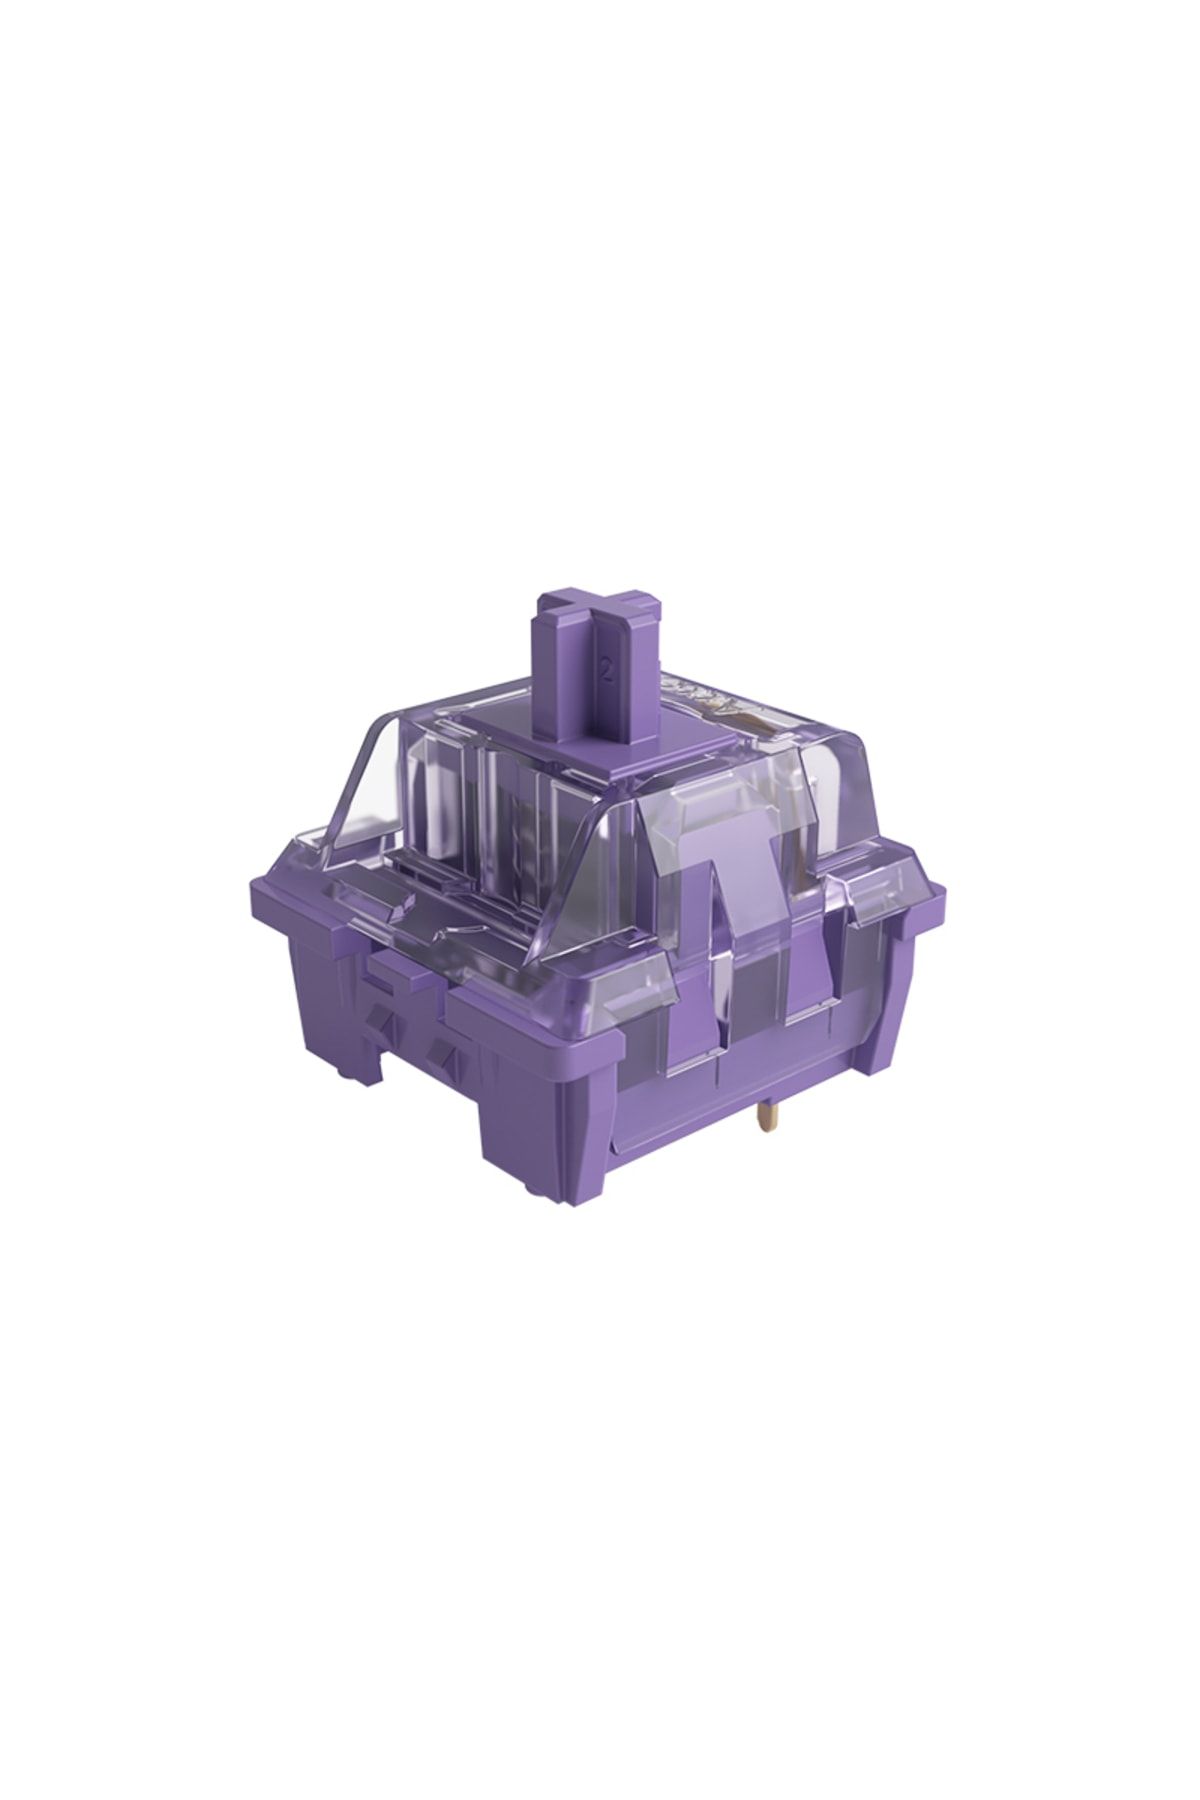 AKKO Cs Lavender Purple Tactile Switch-3 Pin (45 Adet)